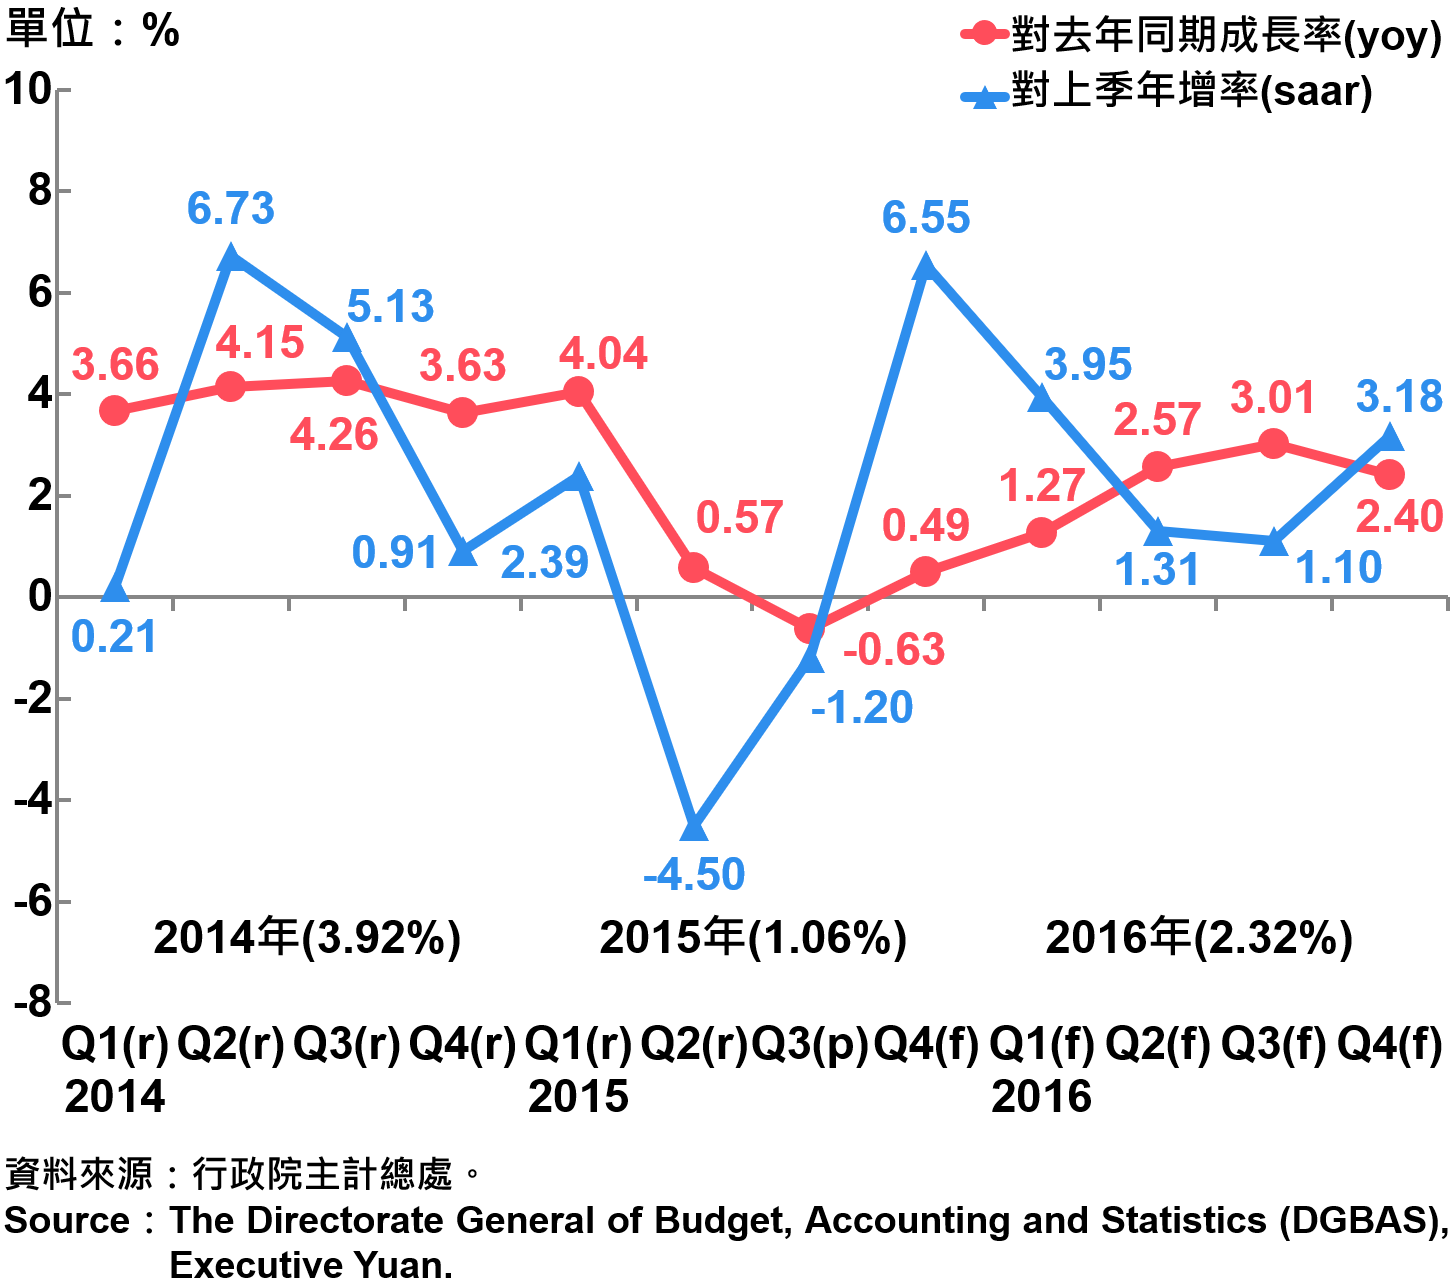 圖1 臺灣經濟成長率趨勢圖 Expenditures on Real GDP in Terms of Growth Rates